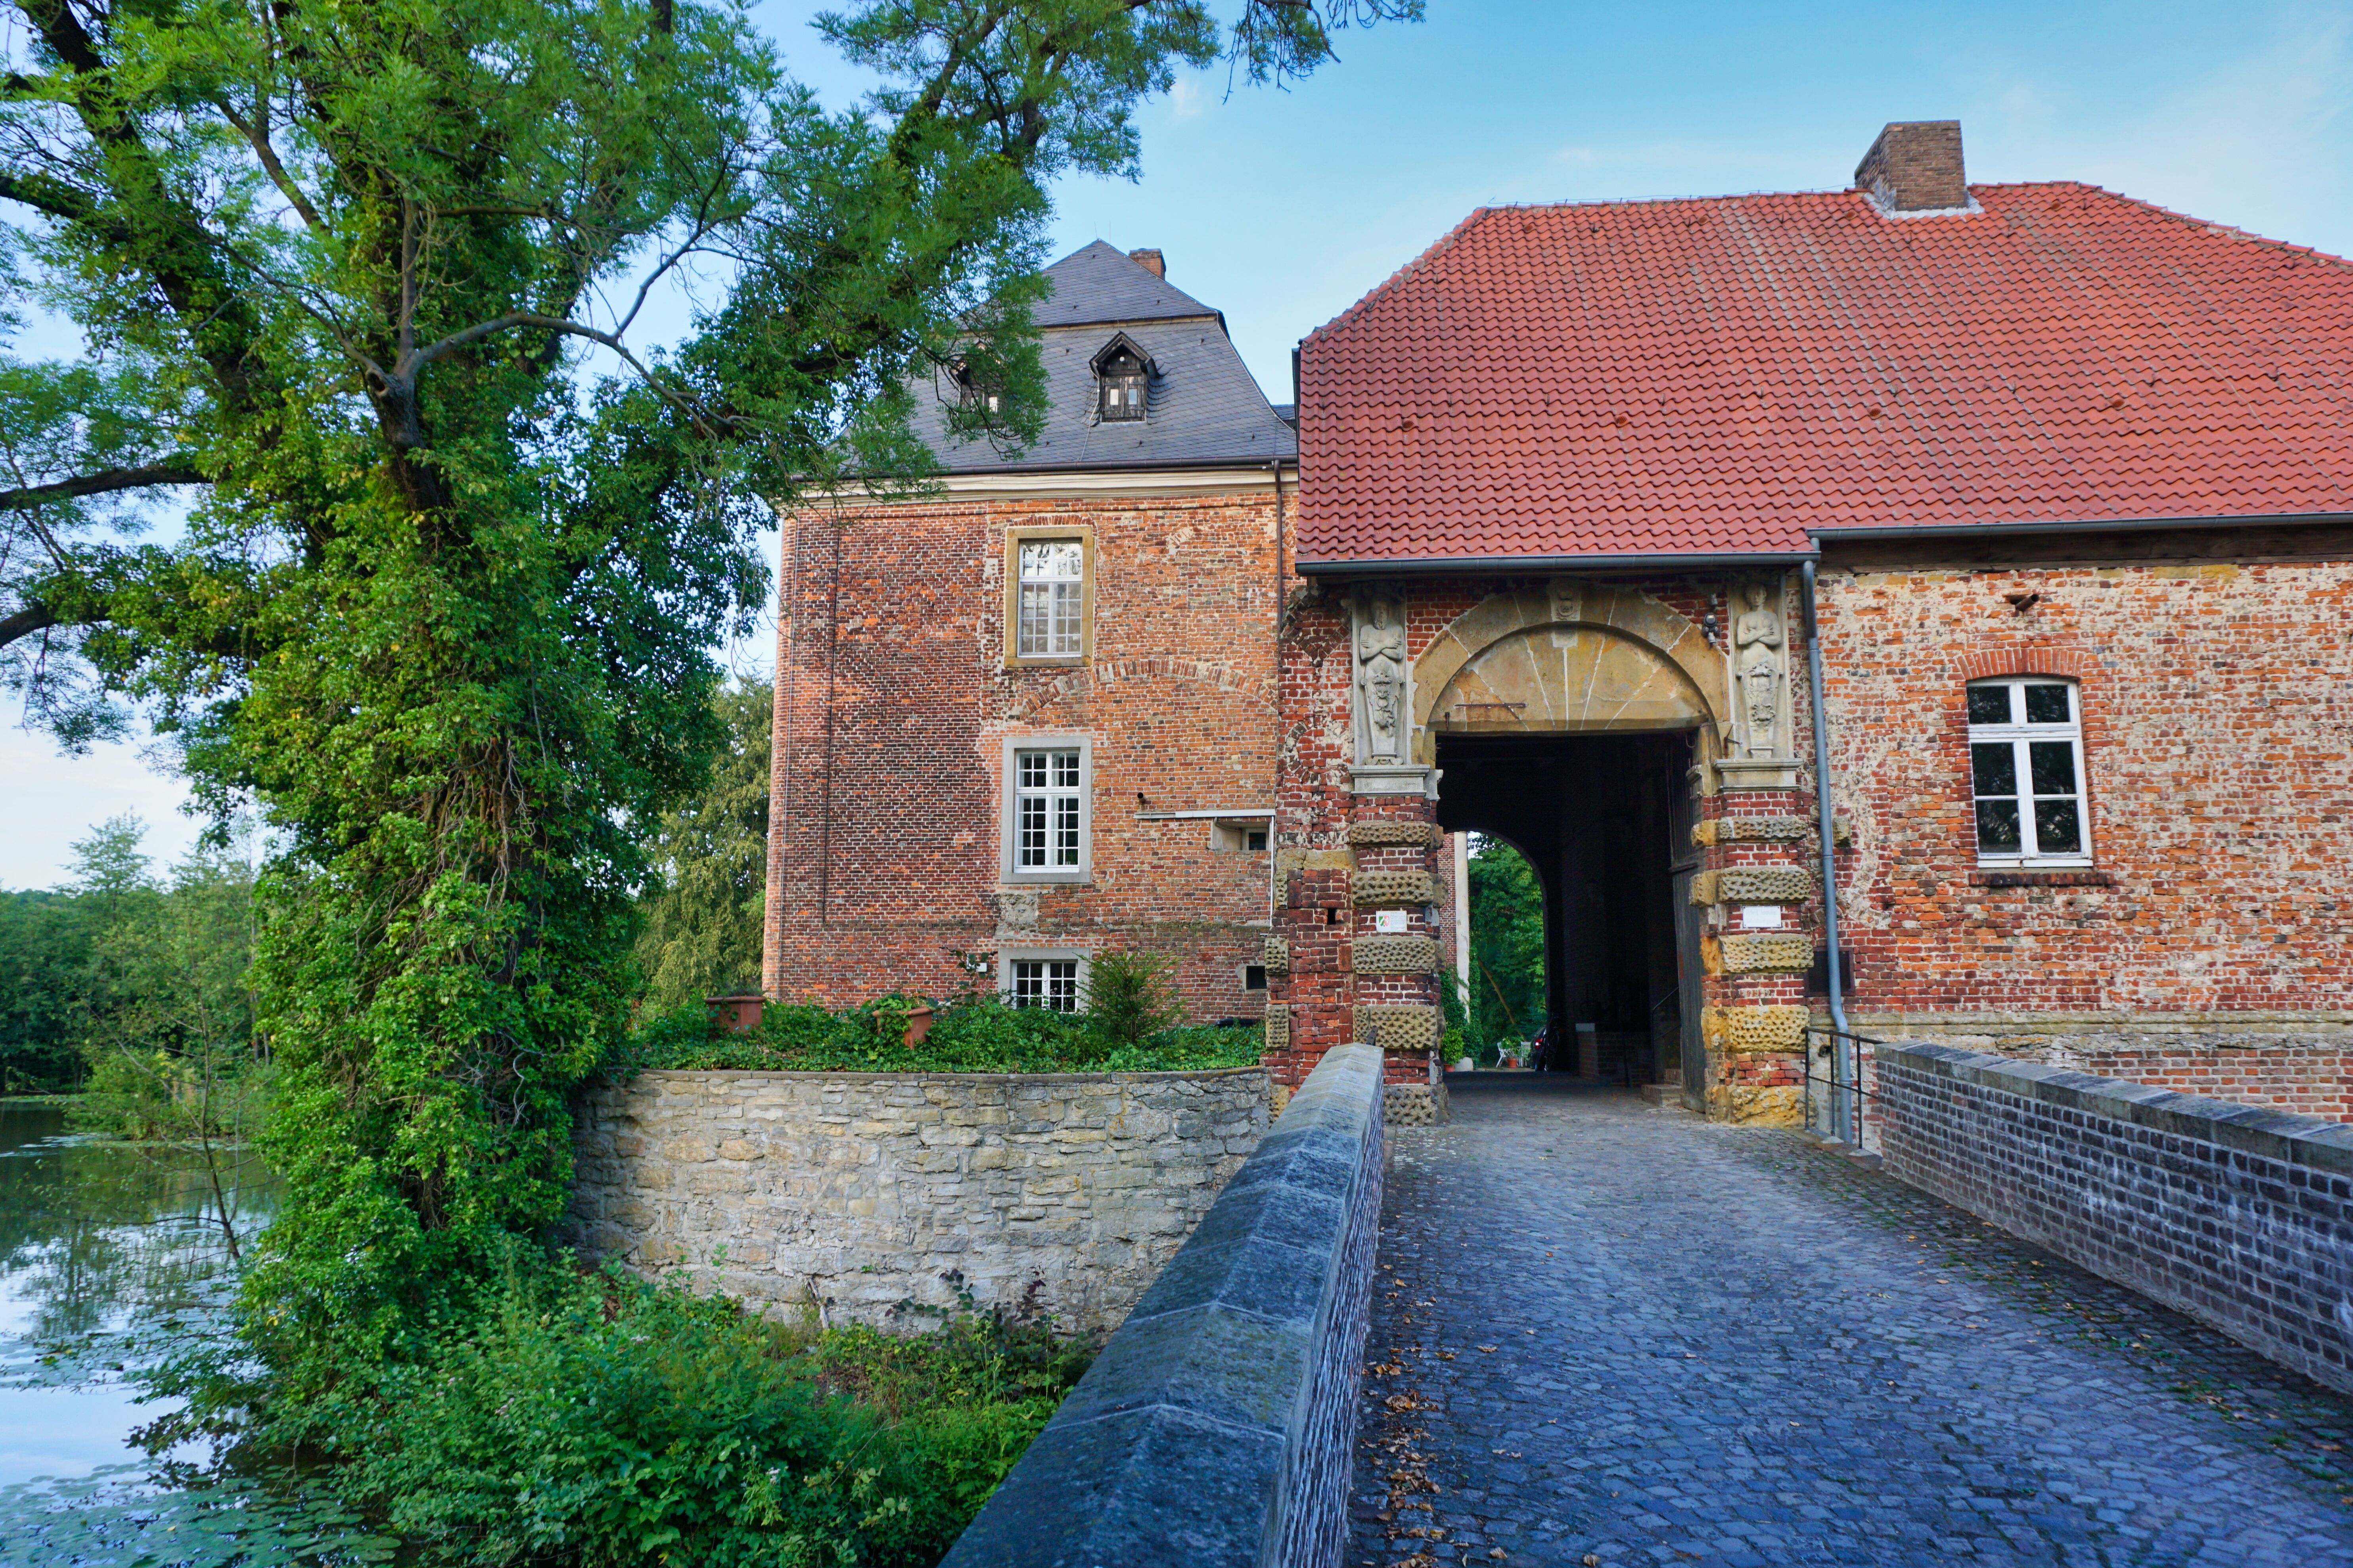 Wasserschloss Haus Geist, Oelde.
